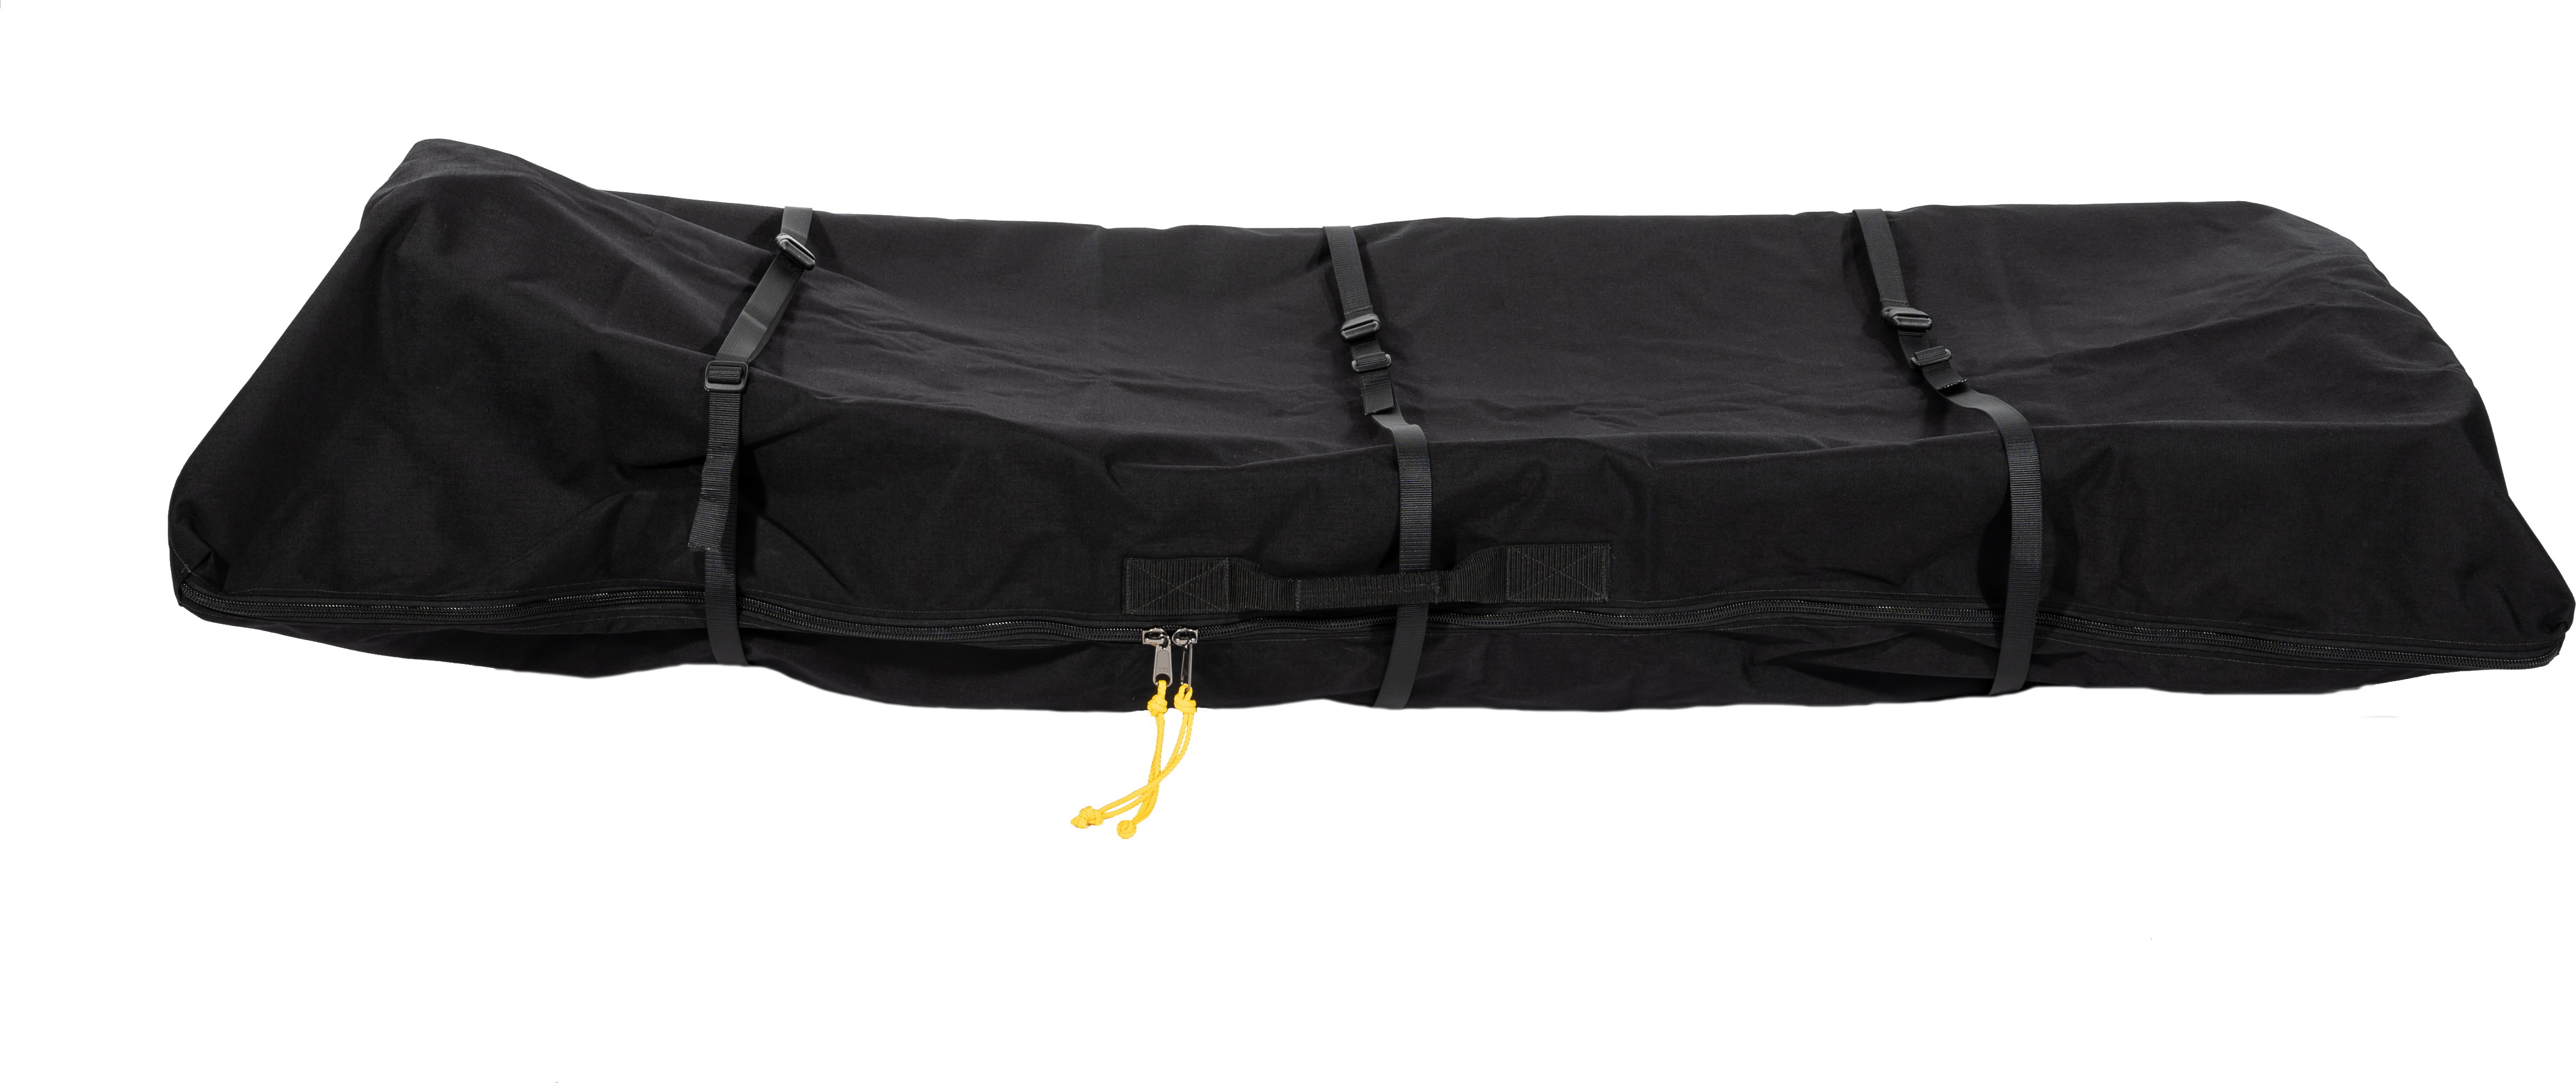 Transport bag For 170 cm Pulk